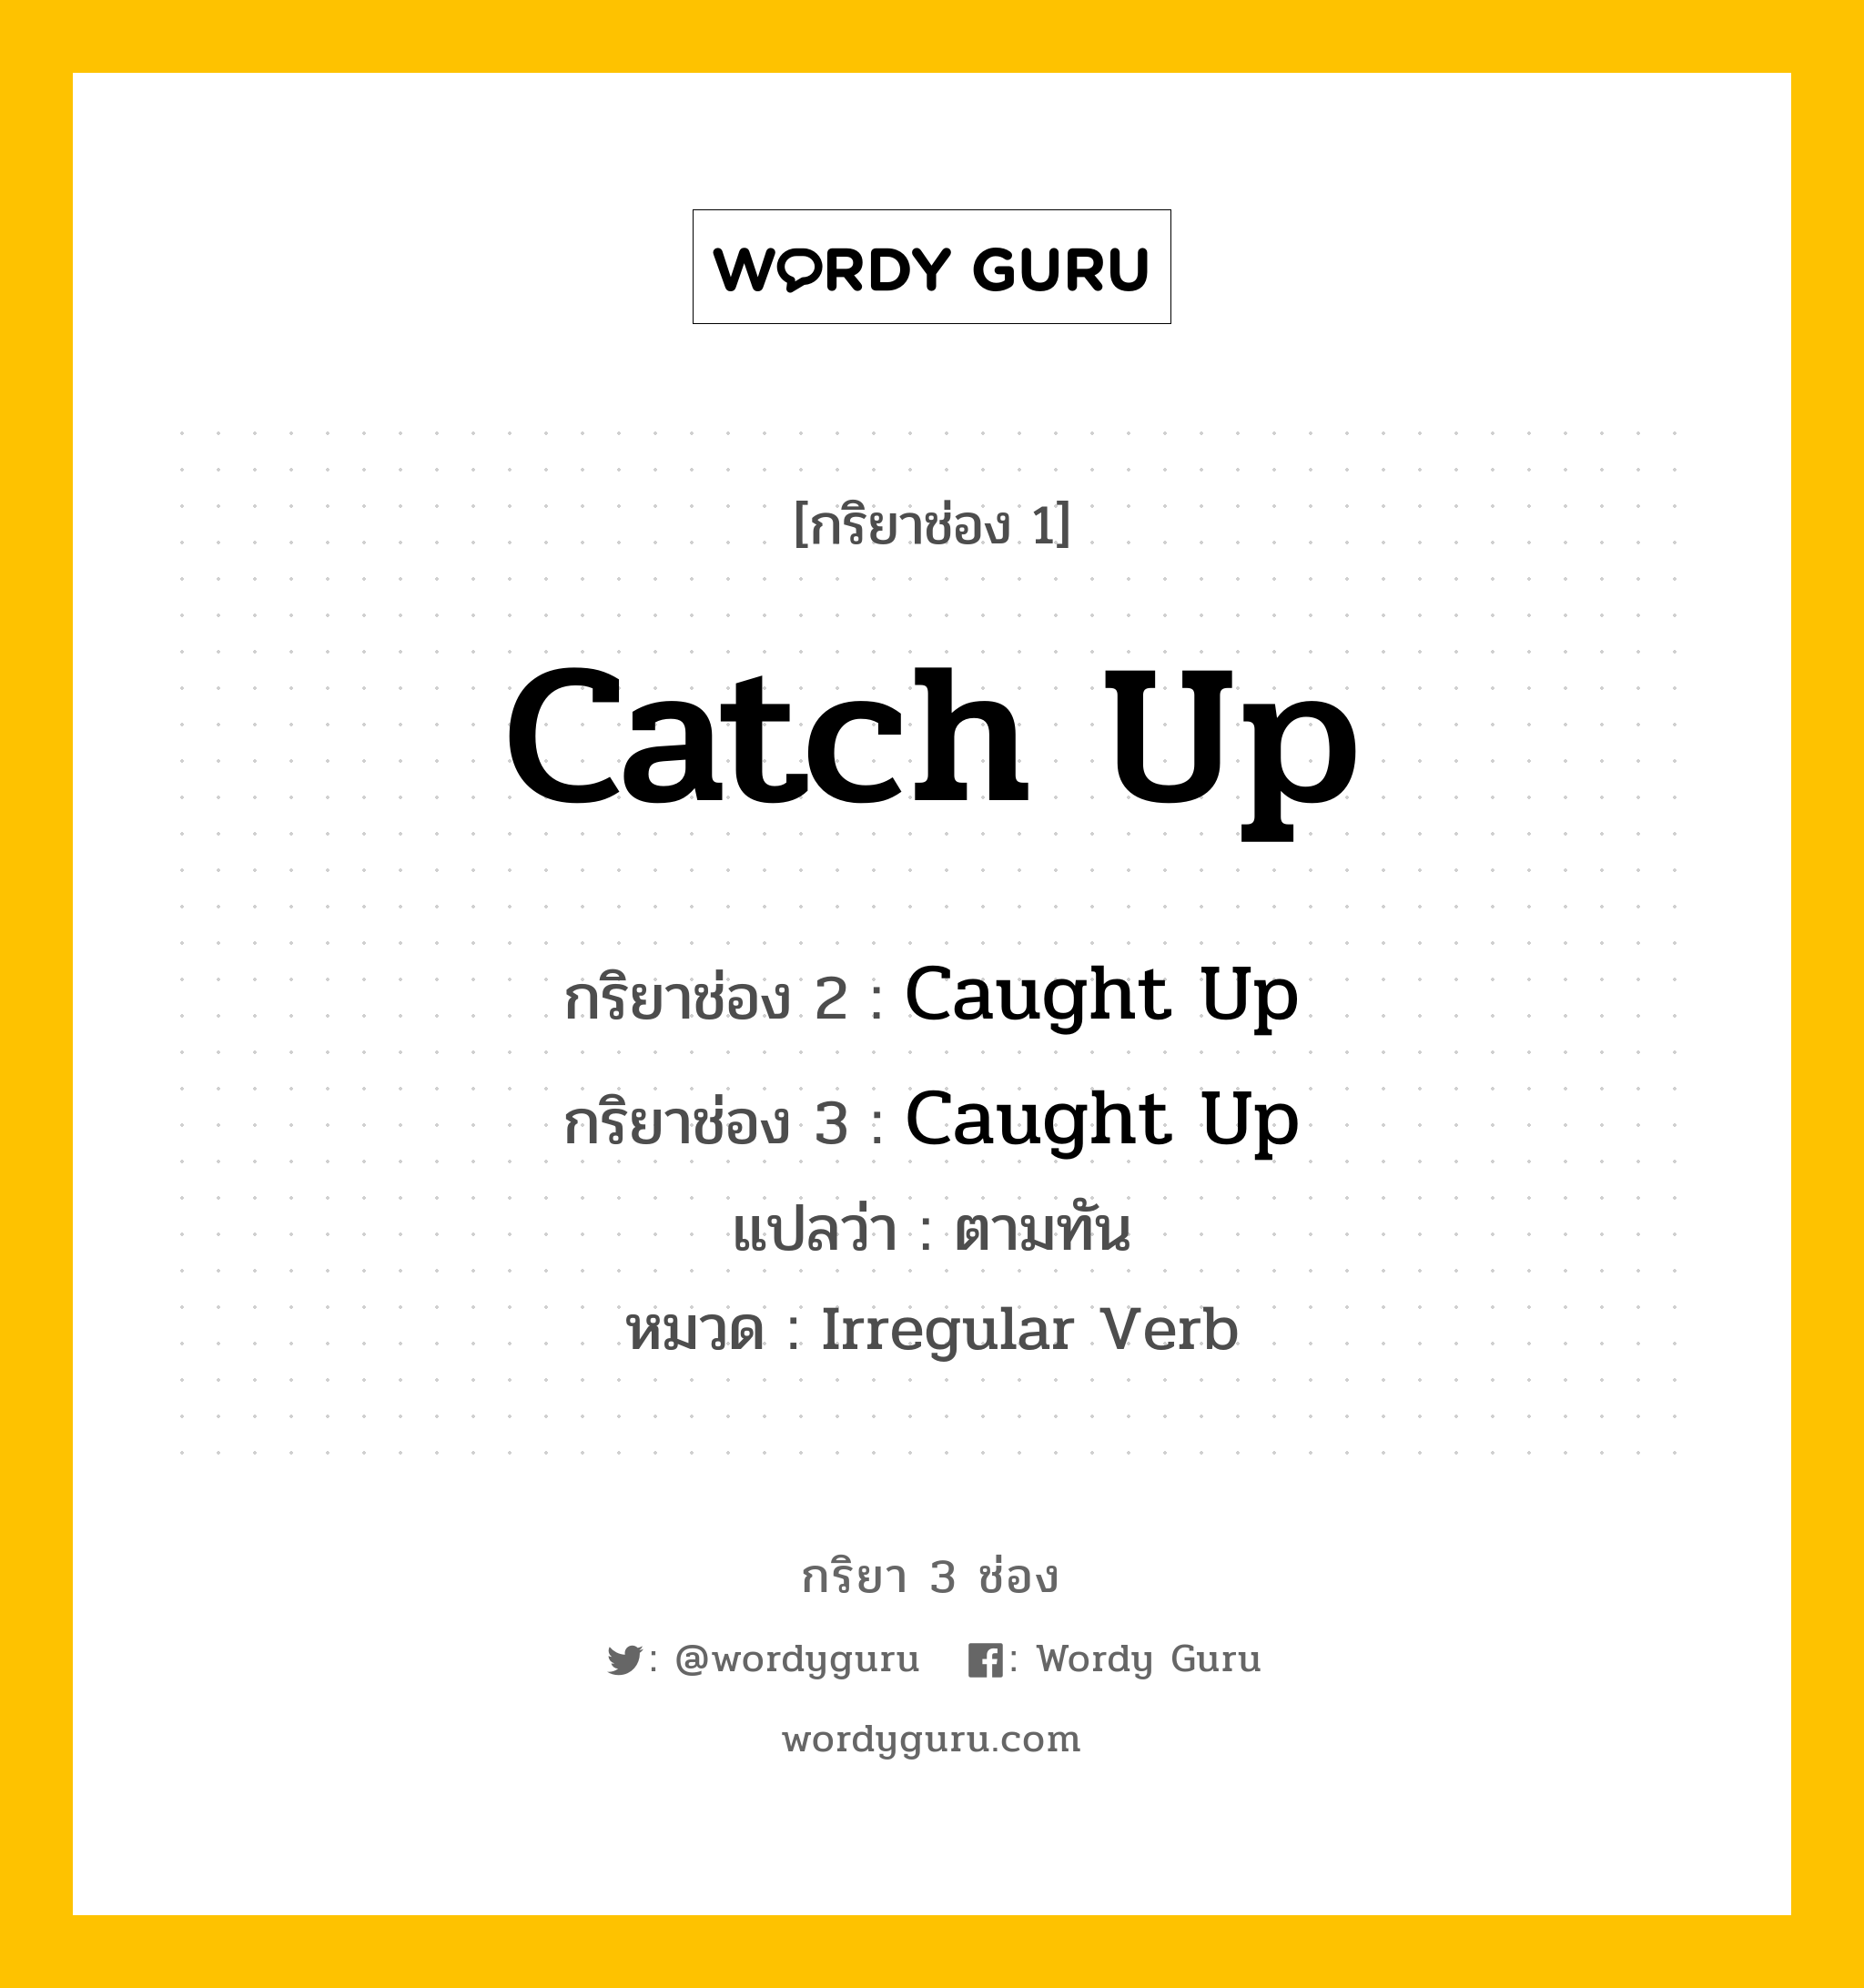 กริยา 3 ช่อง: Catch Up ช่อง 2 Catch Up ช่อง 3 คืออะไร, กริยาช่อง 1 Catch Up กริยาช่อง 2 Caught Up กริยาช่อง 3 Caught Up แปลว่า ตามทัน หมวด Irregular Verb หมวด Irregular Verb